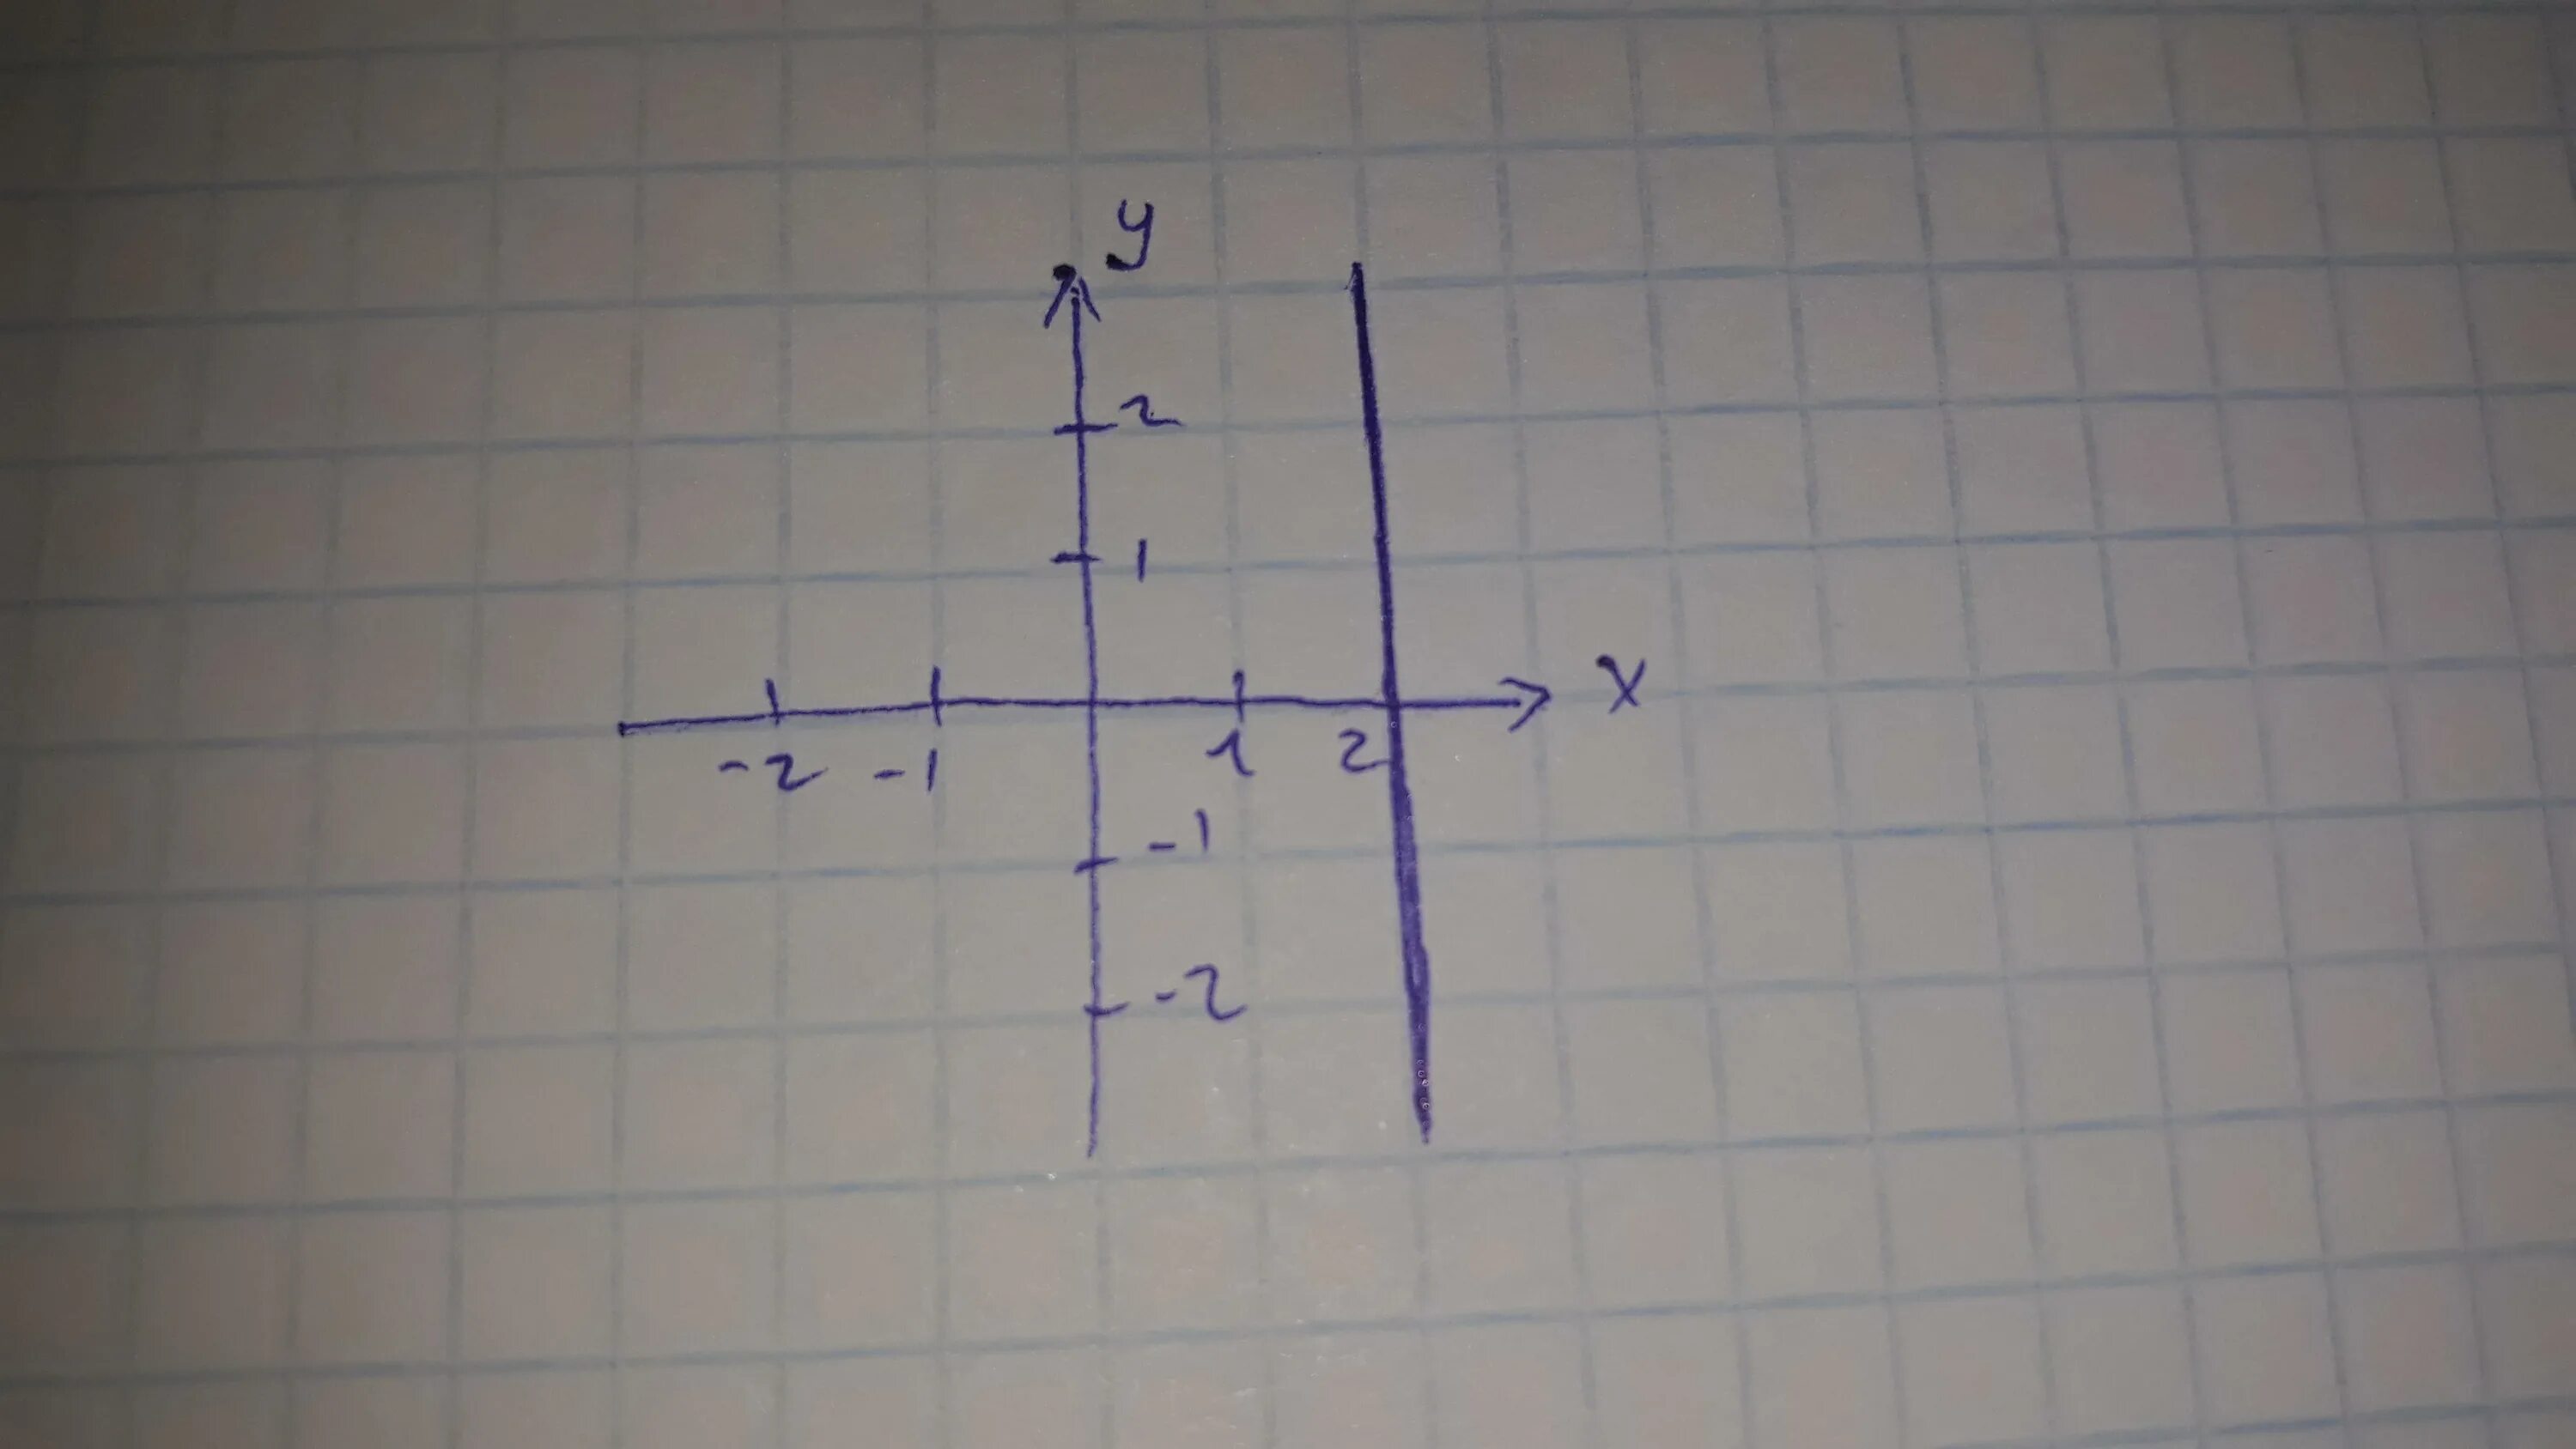 Изобразить на координатной плоскости. Изобразить на координатной плоскости ( x-2y) (x-7). Изобрази на координатной плоскости точки. Изобразите на координатной плоскости точки. X y 24 3 5 6